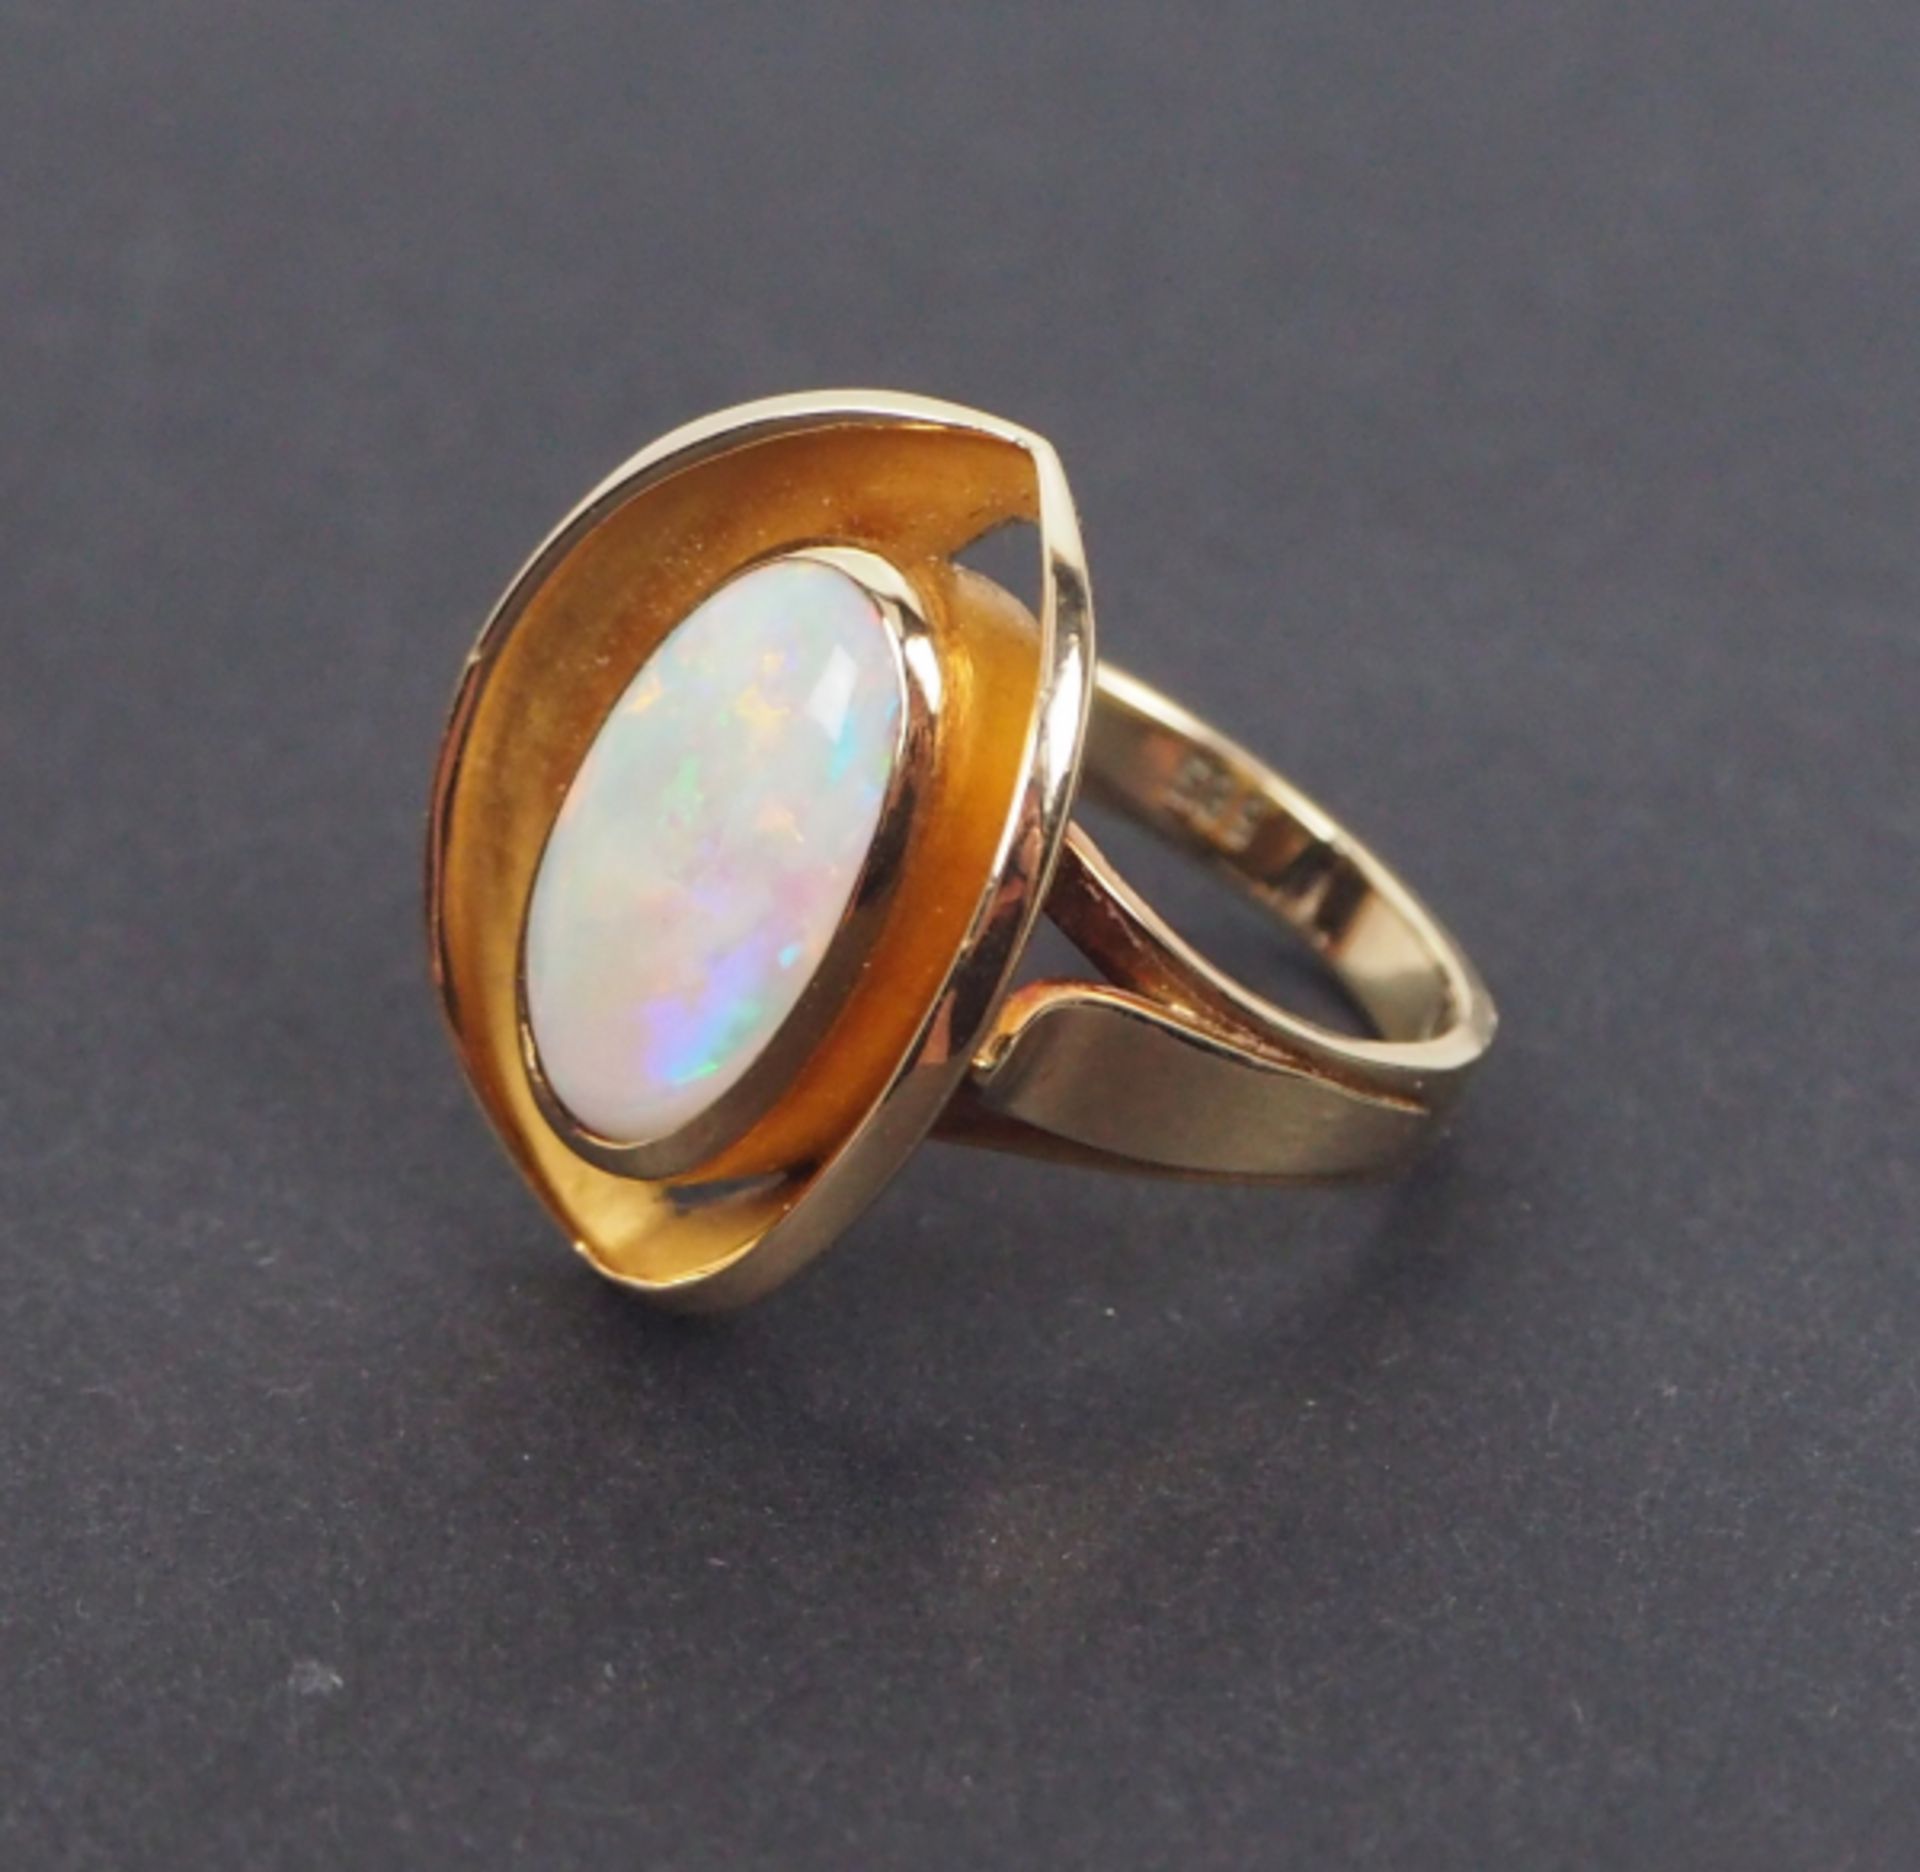 Opalring mit Gold Fassung.Gold, 585 in der Ringschiene gepunzt, mit großem Opal.Zustand: I-II